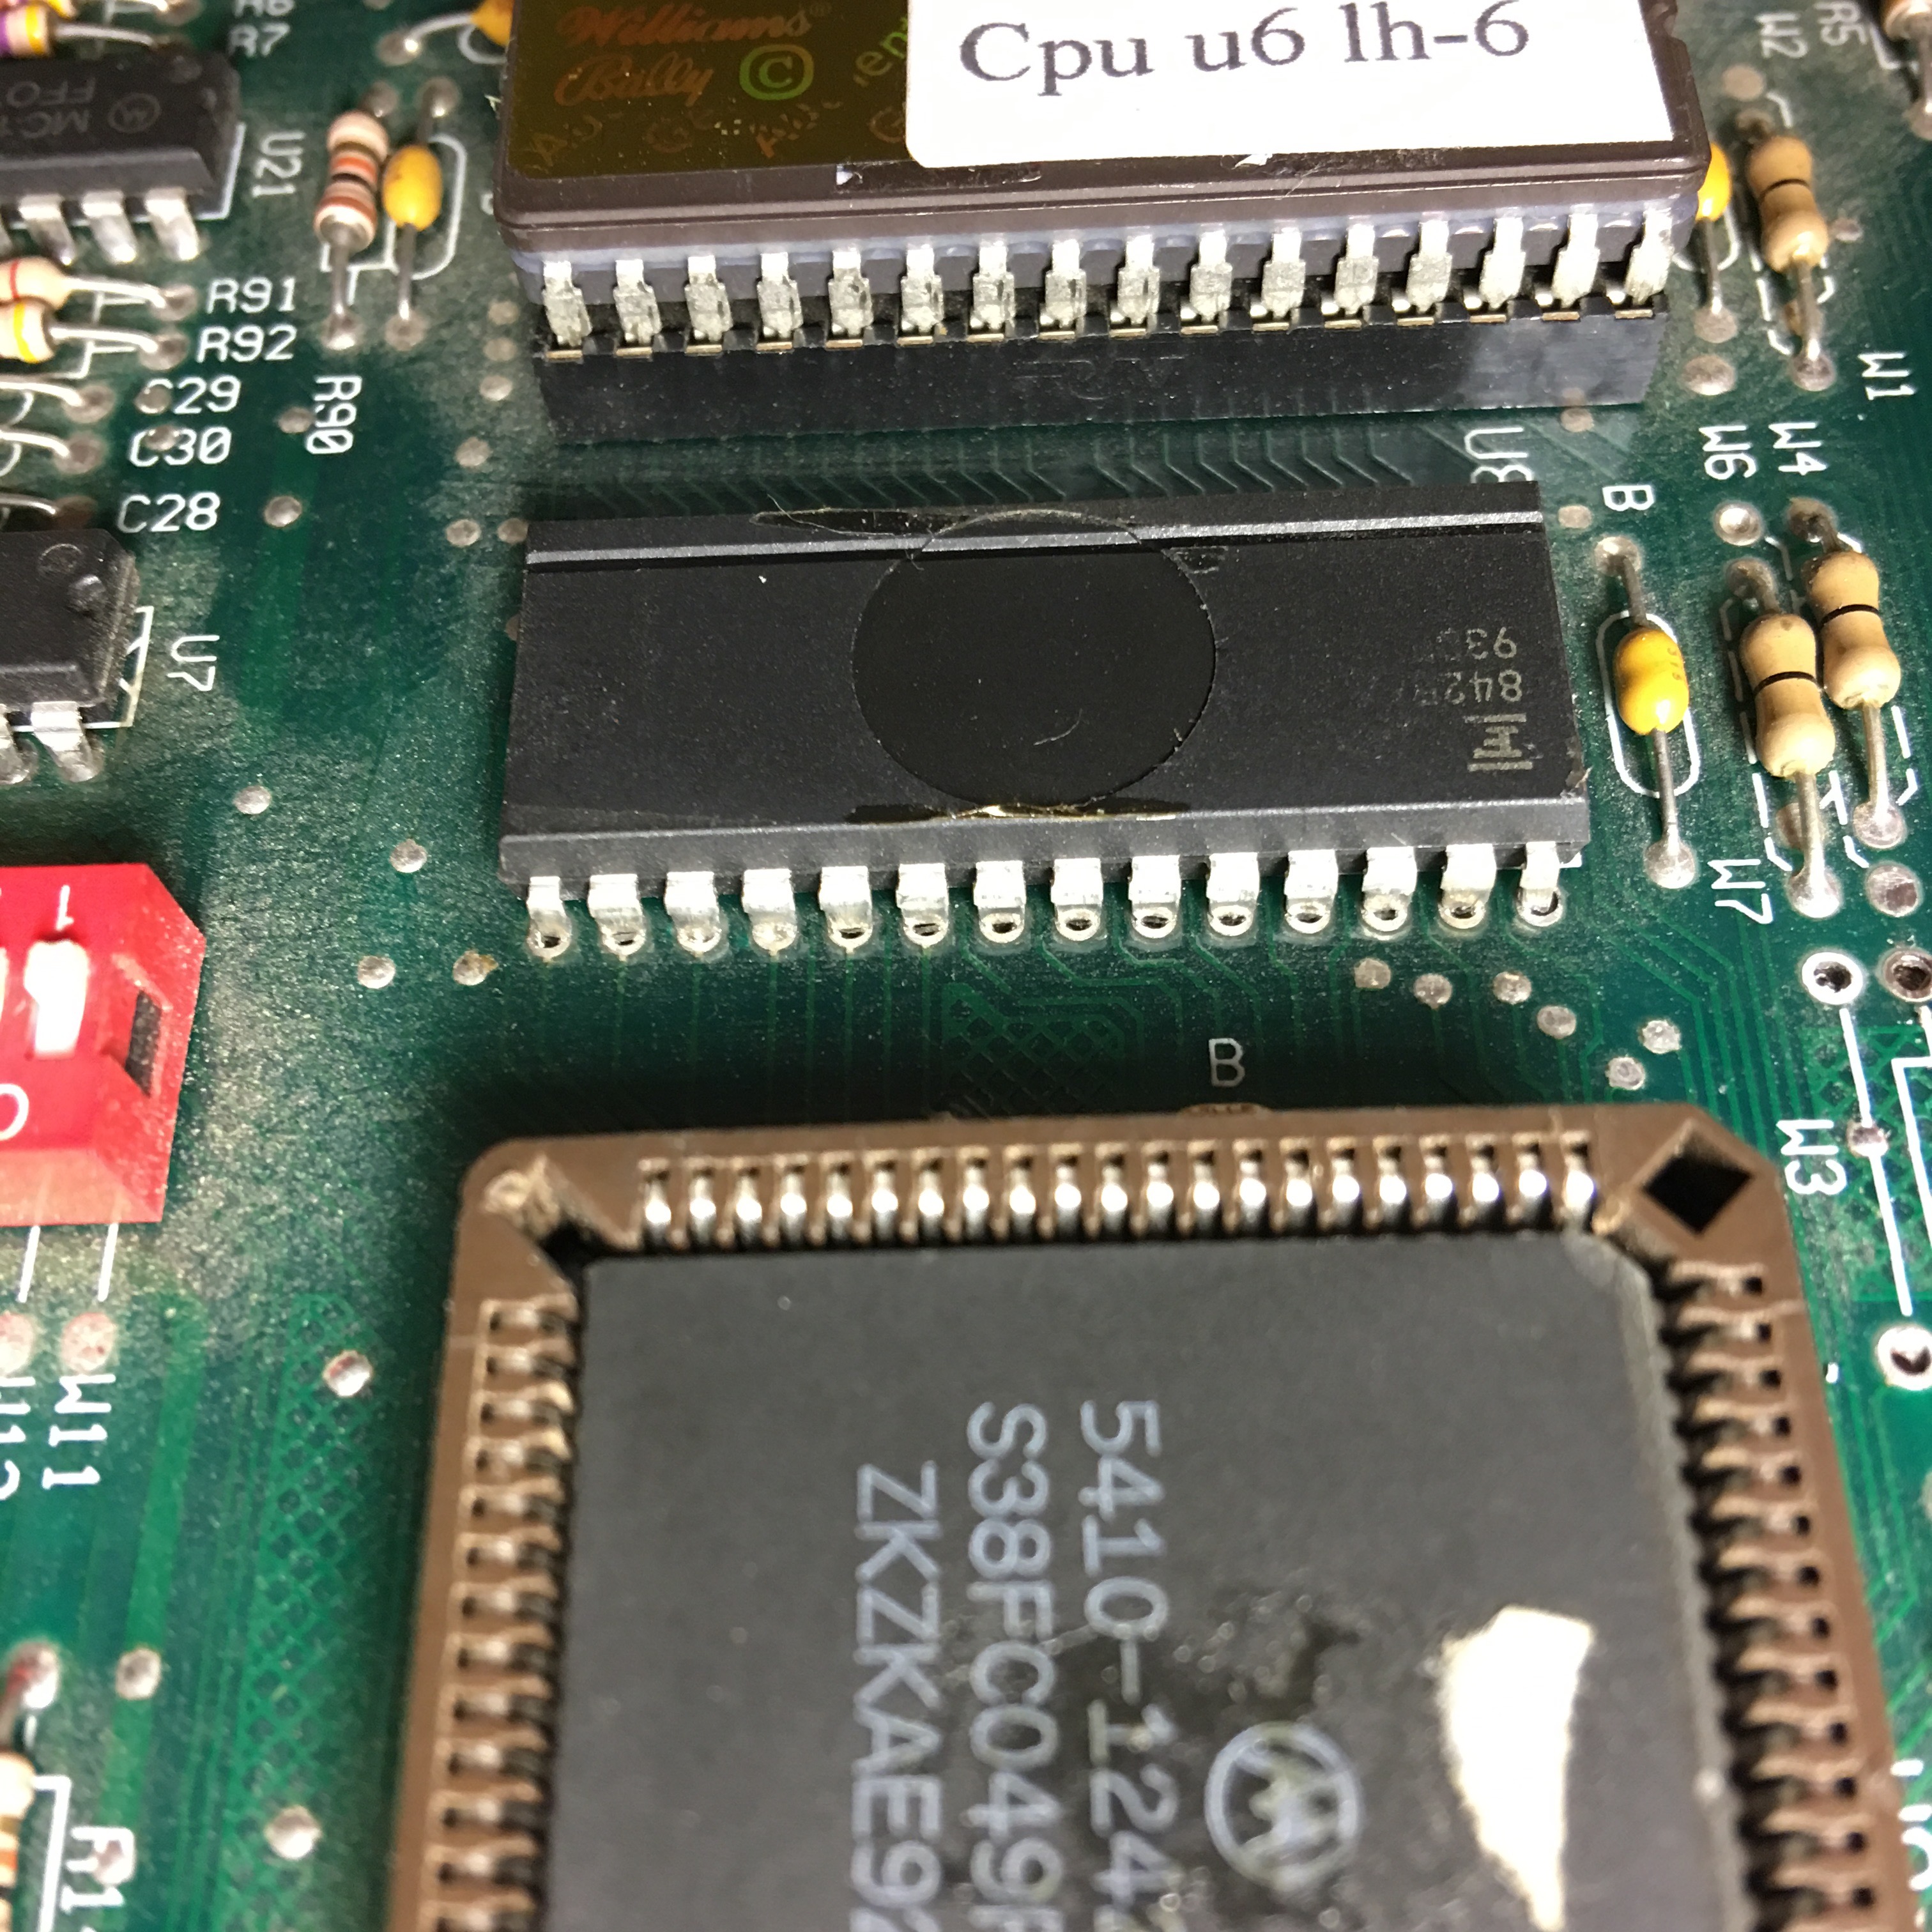 RAM 62256 sur une carte mère WPC, avec un léger excès de soudure à nettoyer avant de tenter la dépose.